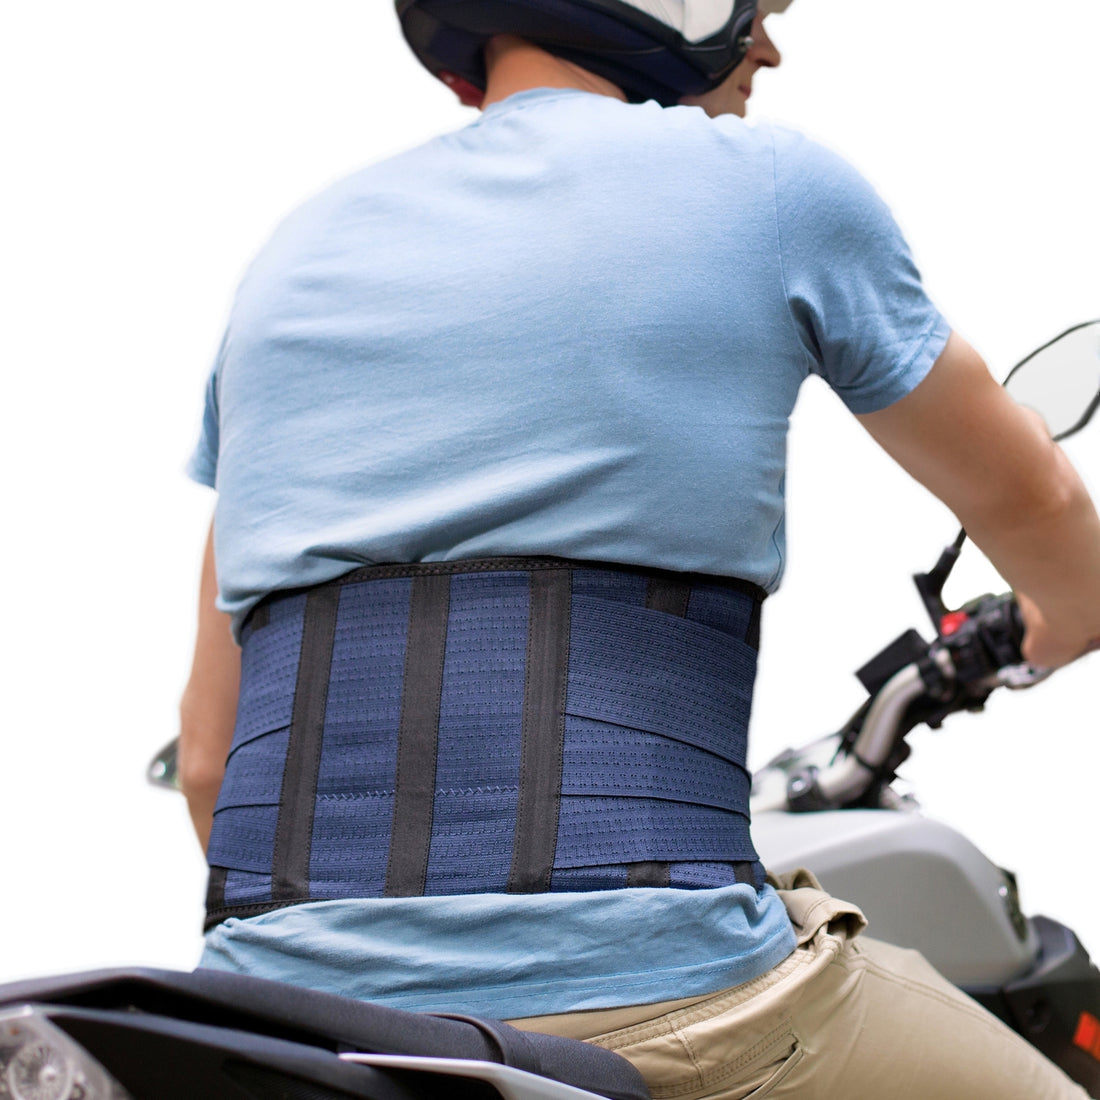 AVESTON® Kidney Belt Back Support Brace for Motorcycle Riding &amp; Motocross